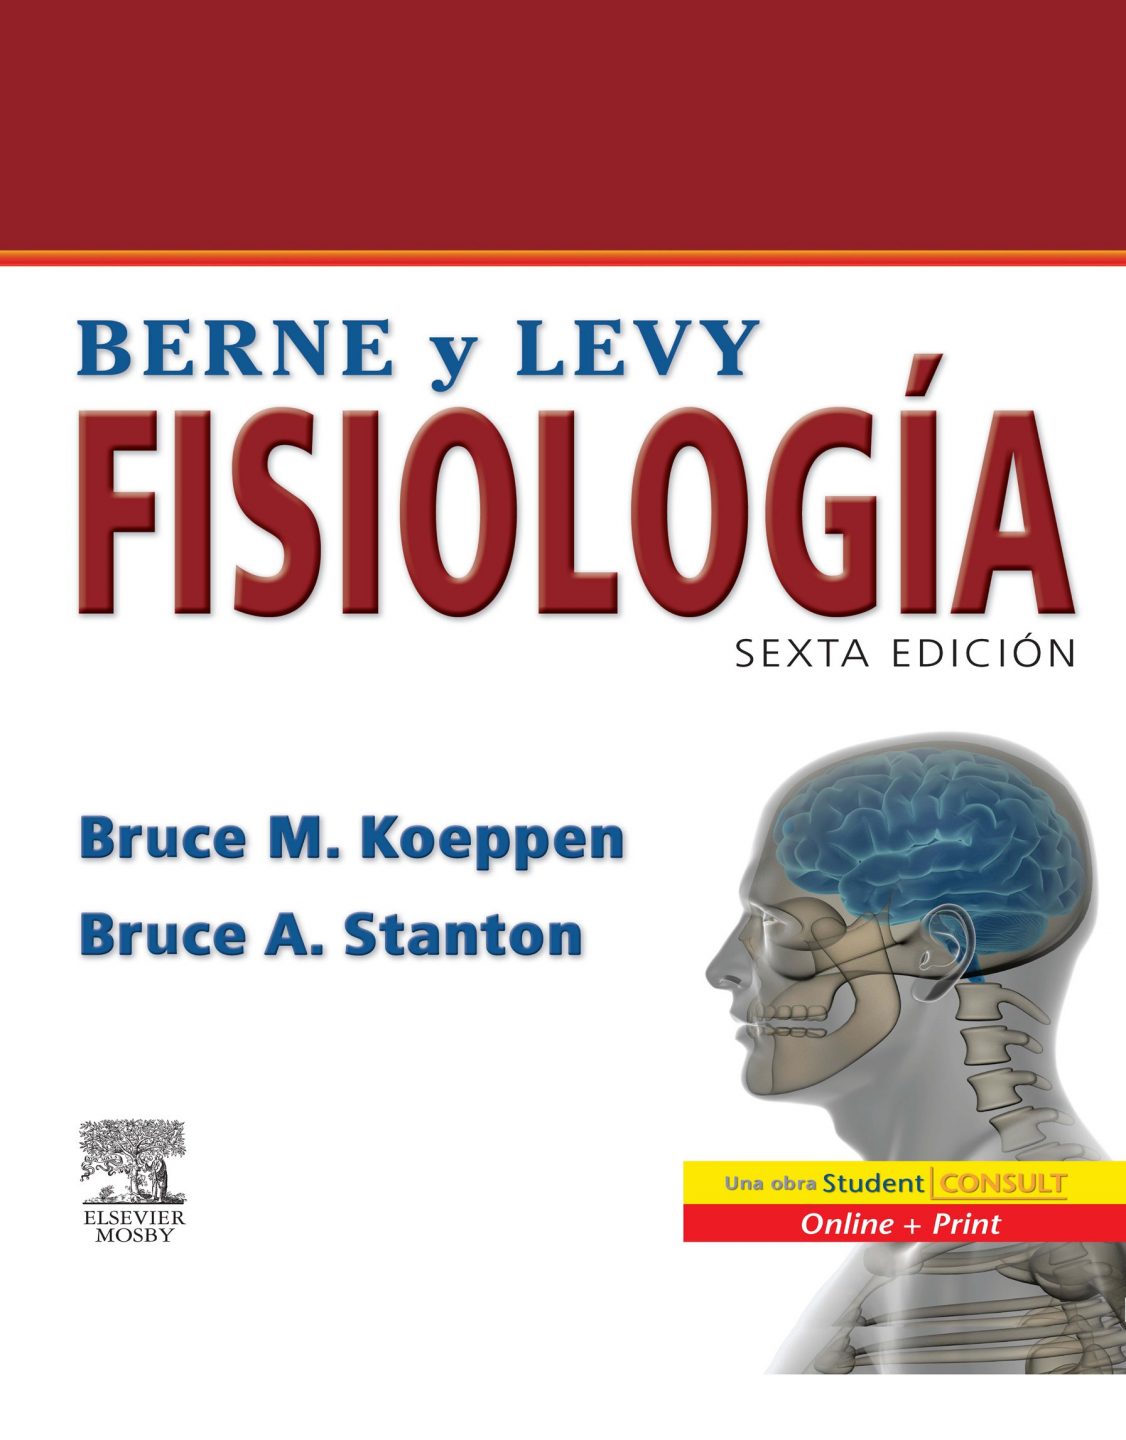 Fisiología (Berne y Levy) 6 Edición Bruce M. Koeppen PDF